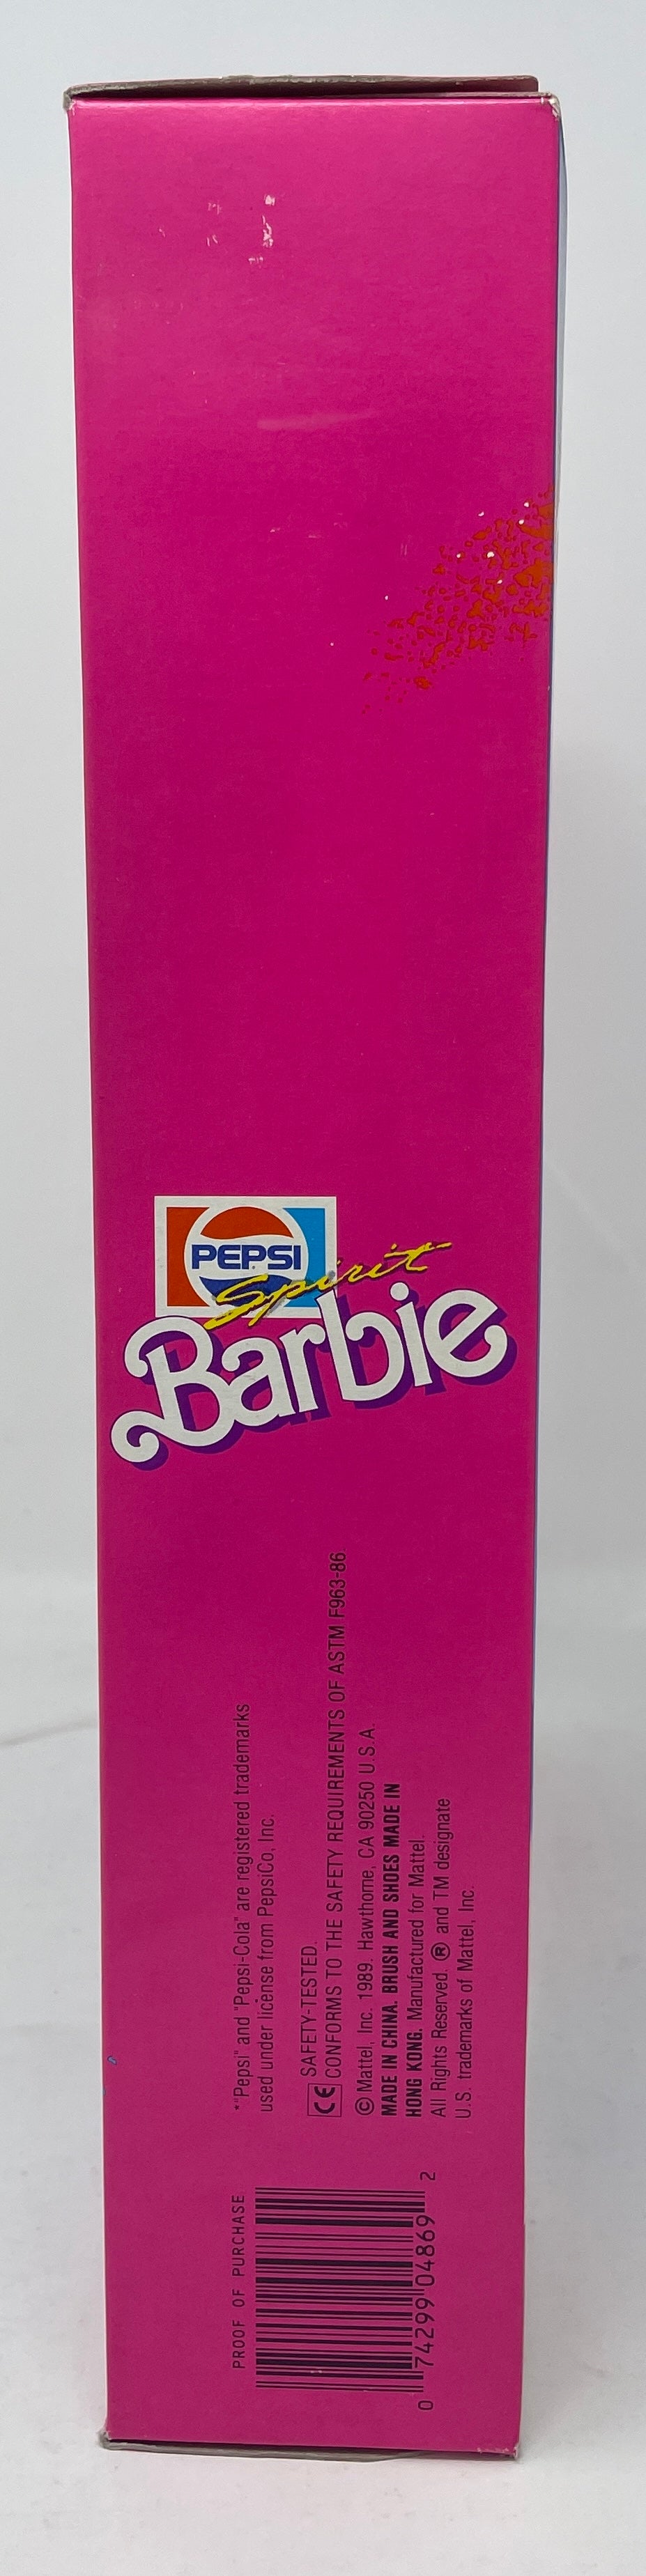 PEPSI SPIRIT BARBIE - #4869 - MATTEL 1989